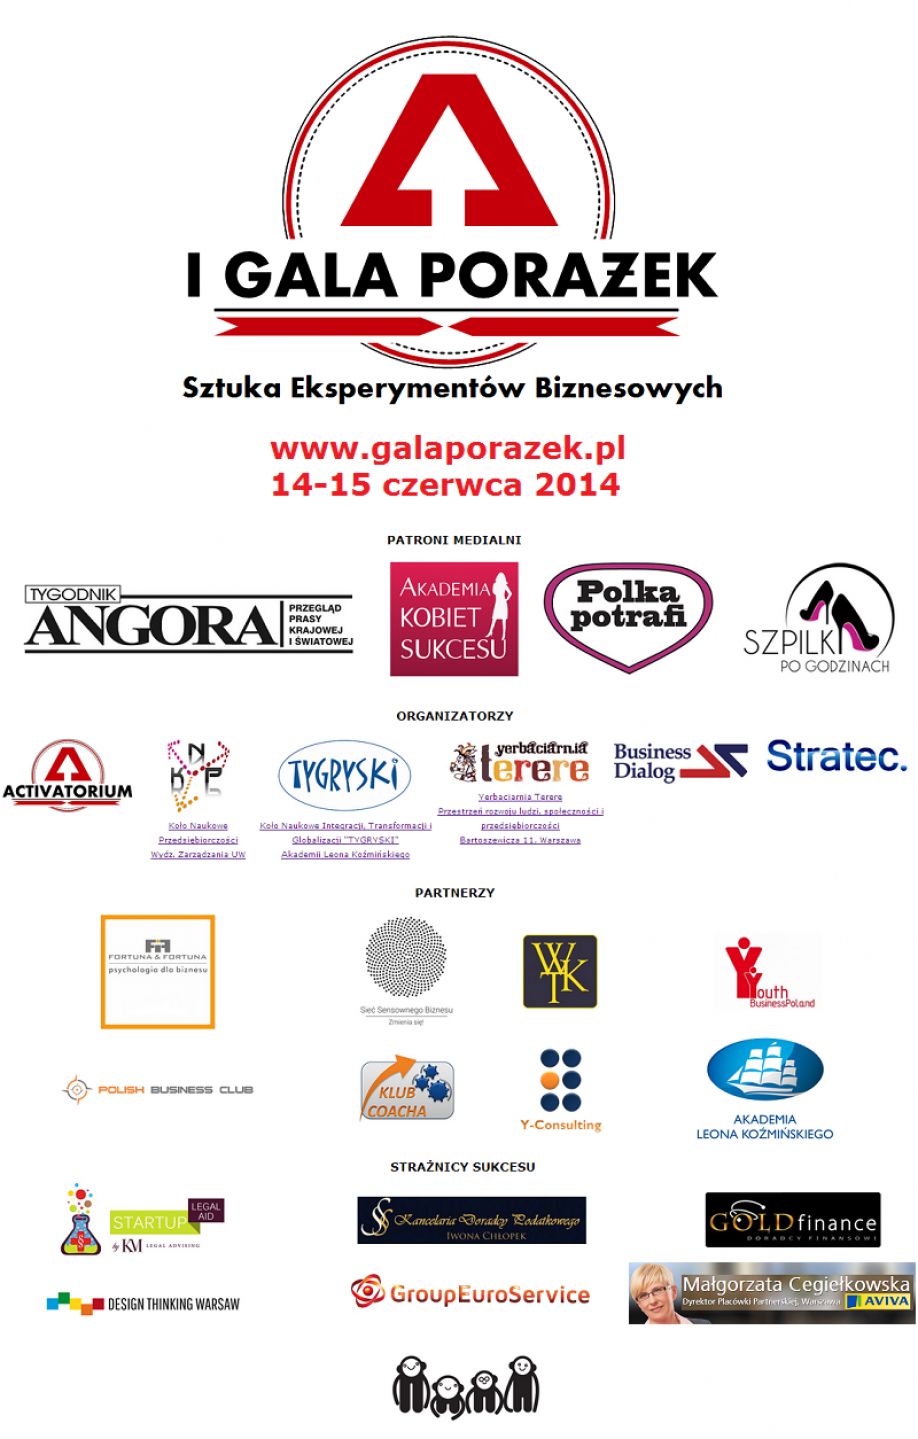 Polish Business Club zaprasza na I Galę Porażek